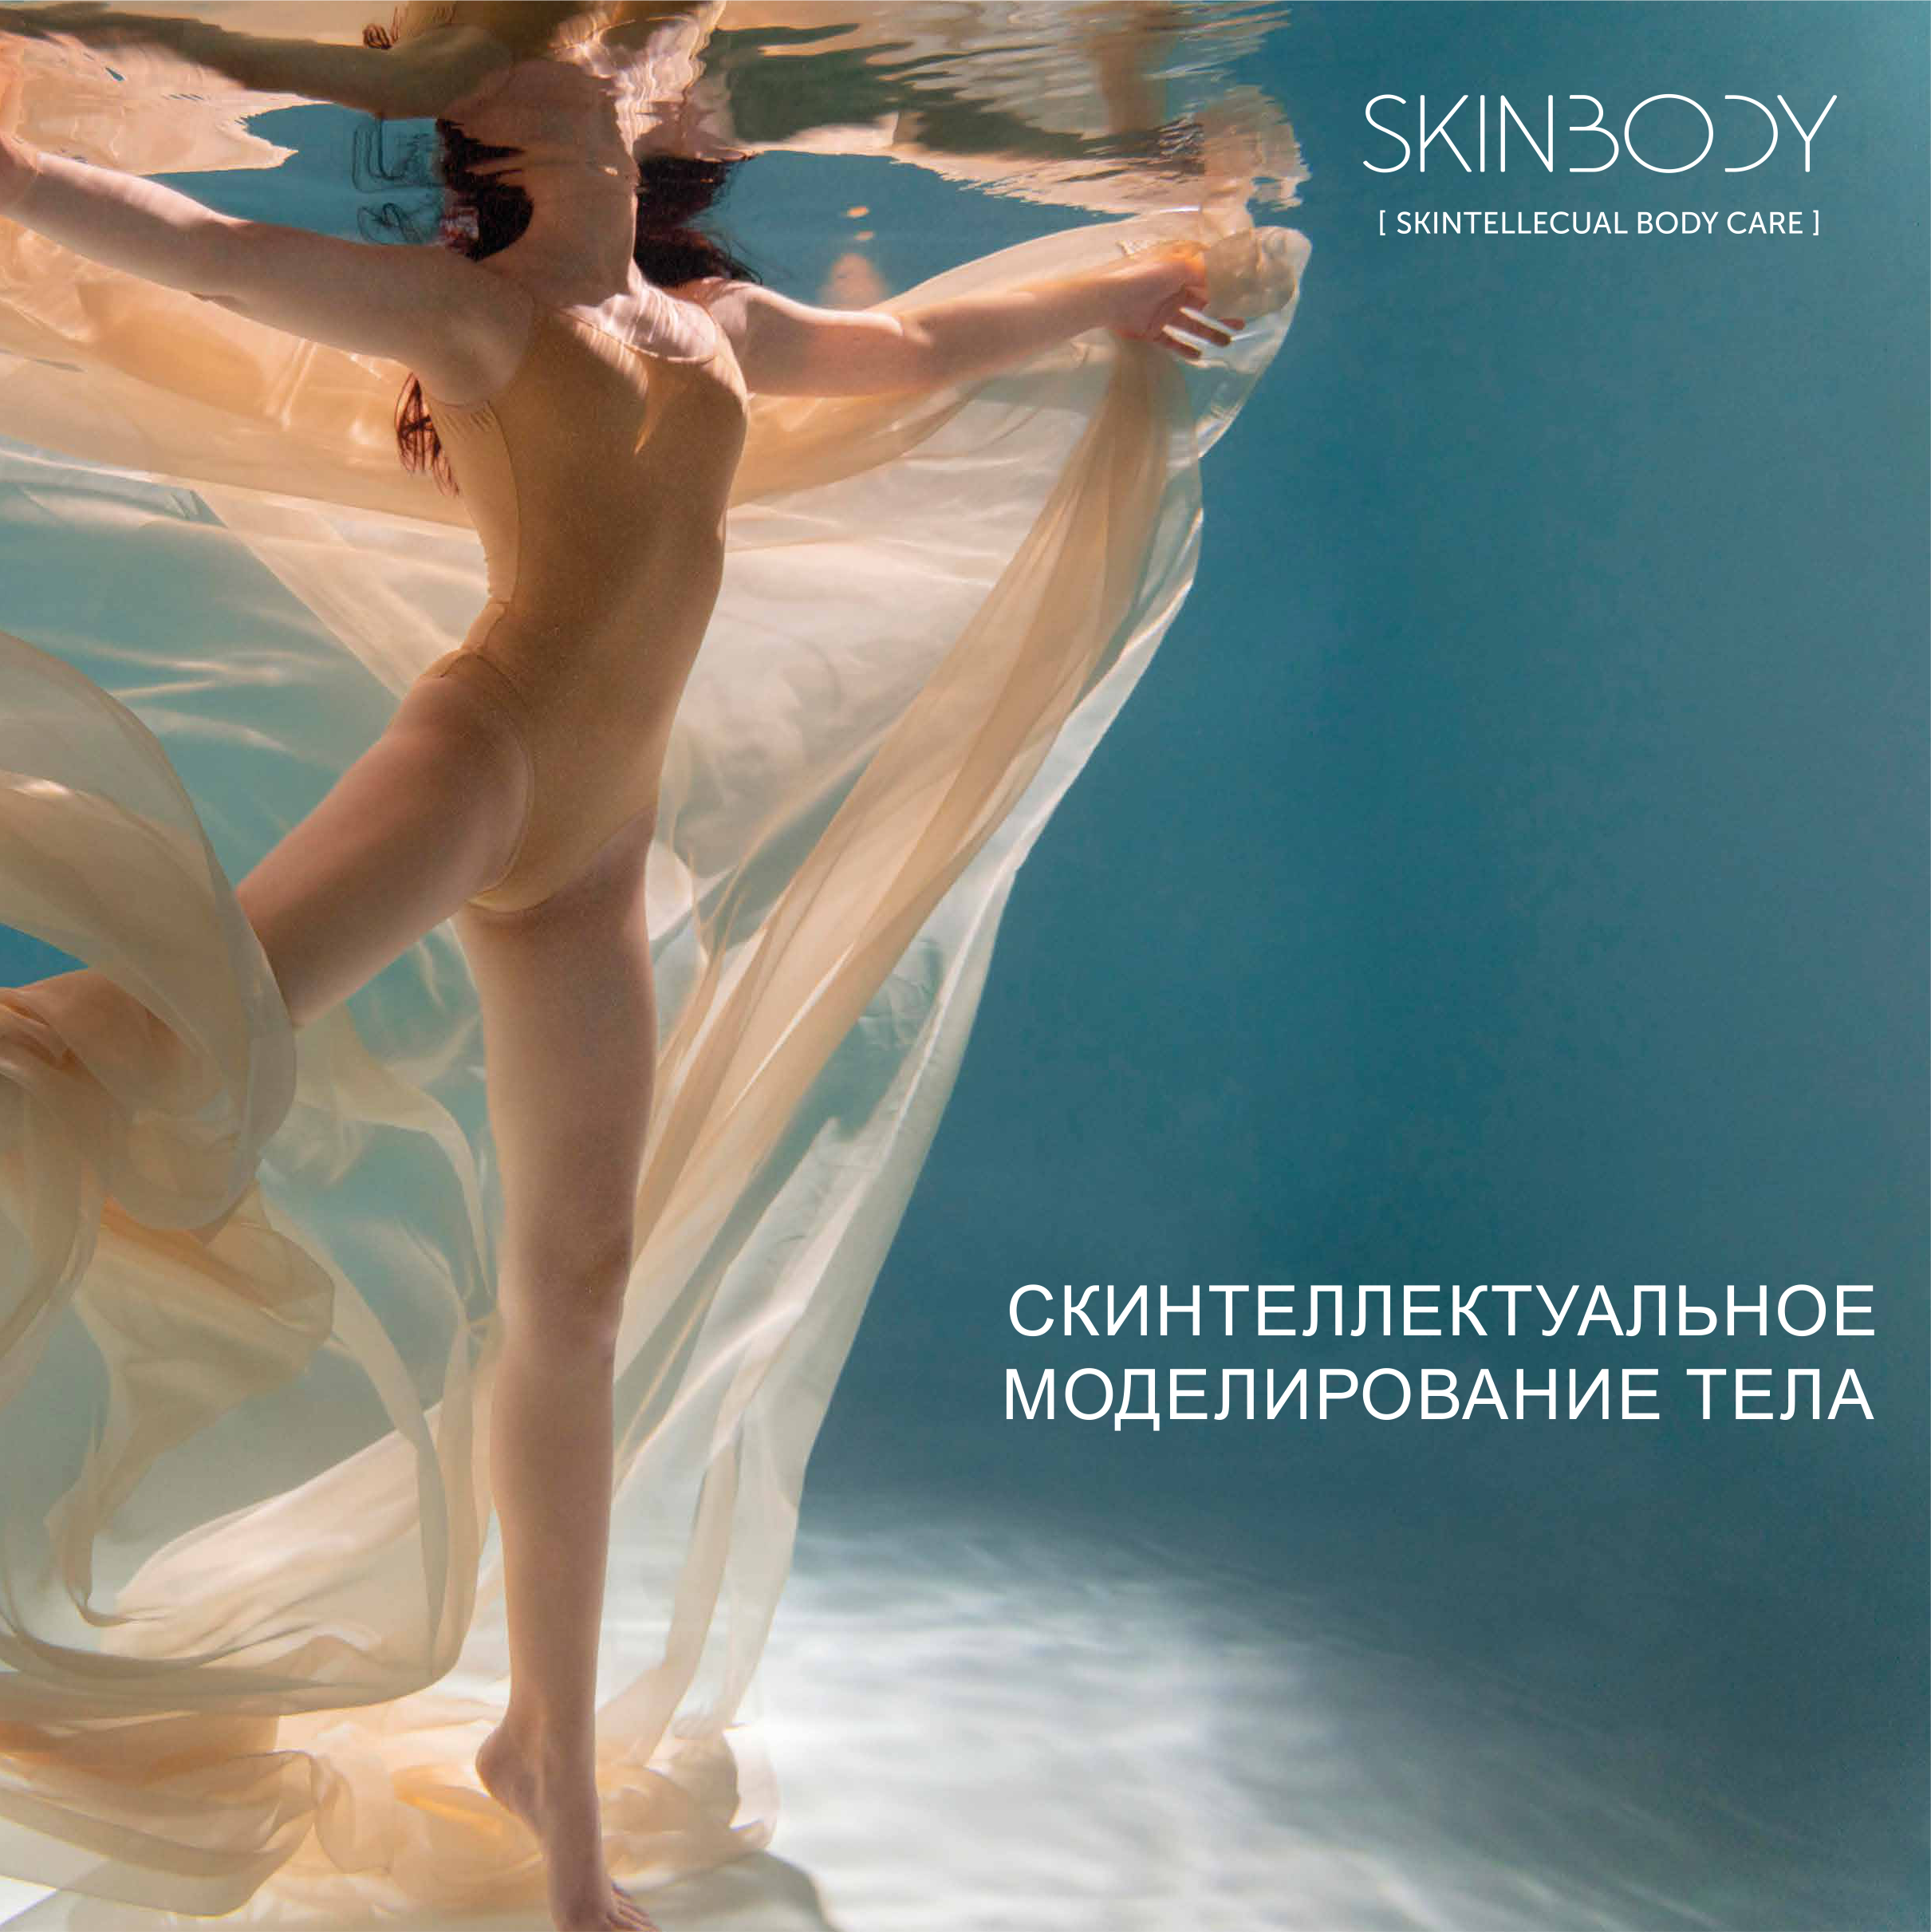 Скинтеллектуальное гипсовое моделирование тела SKINBODY